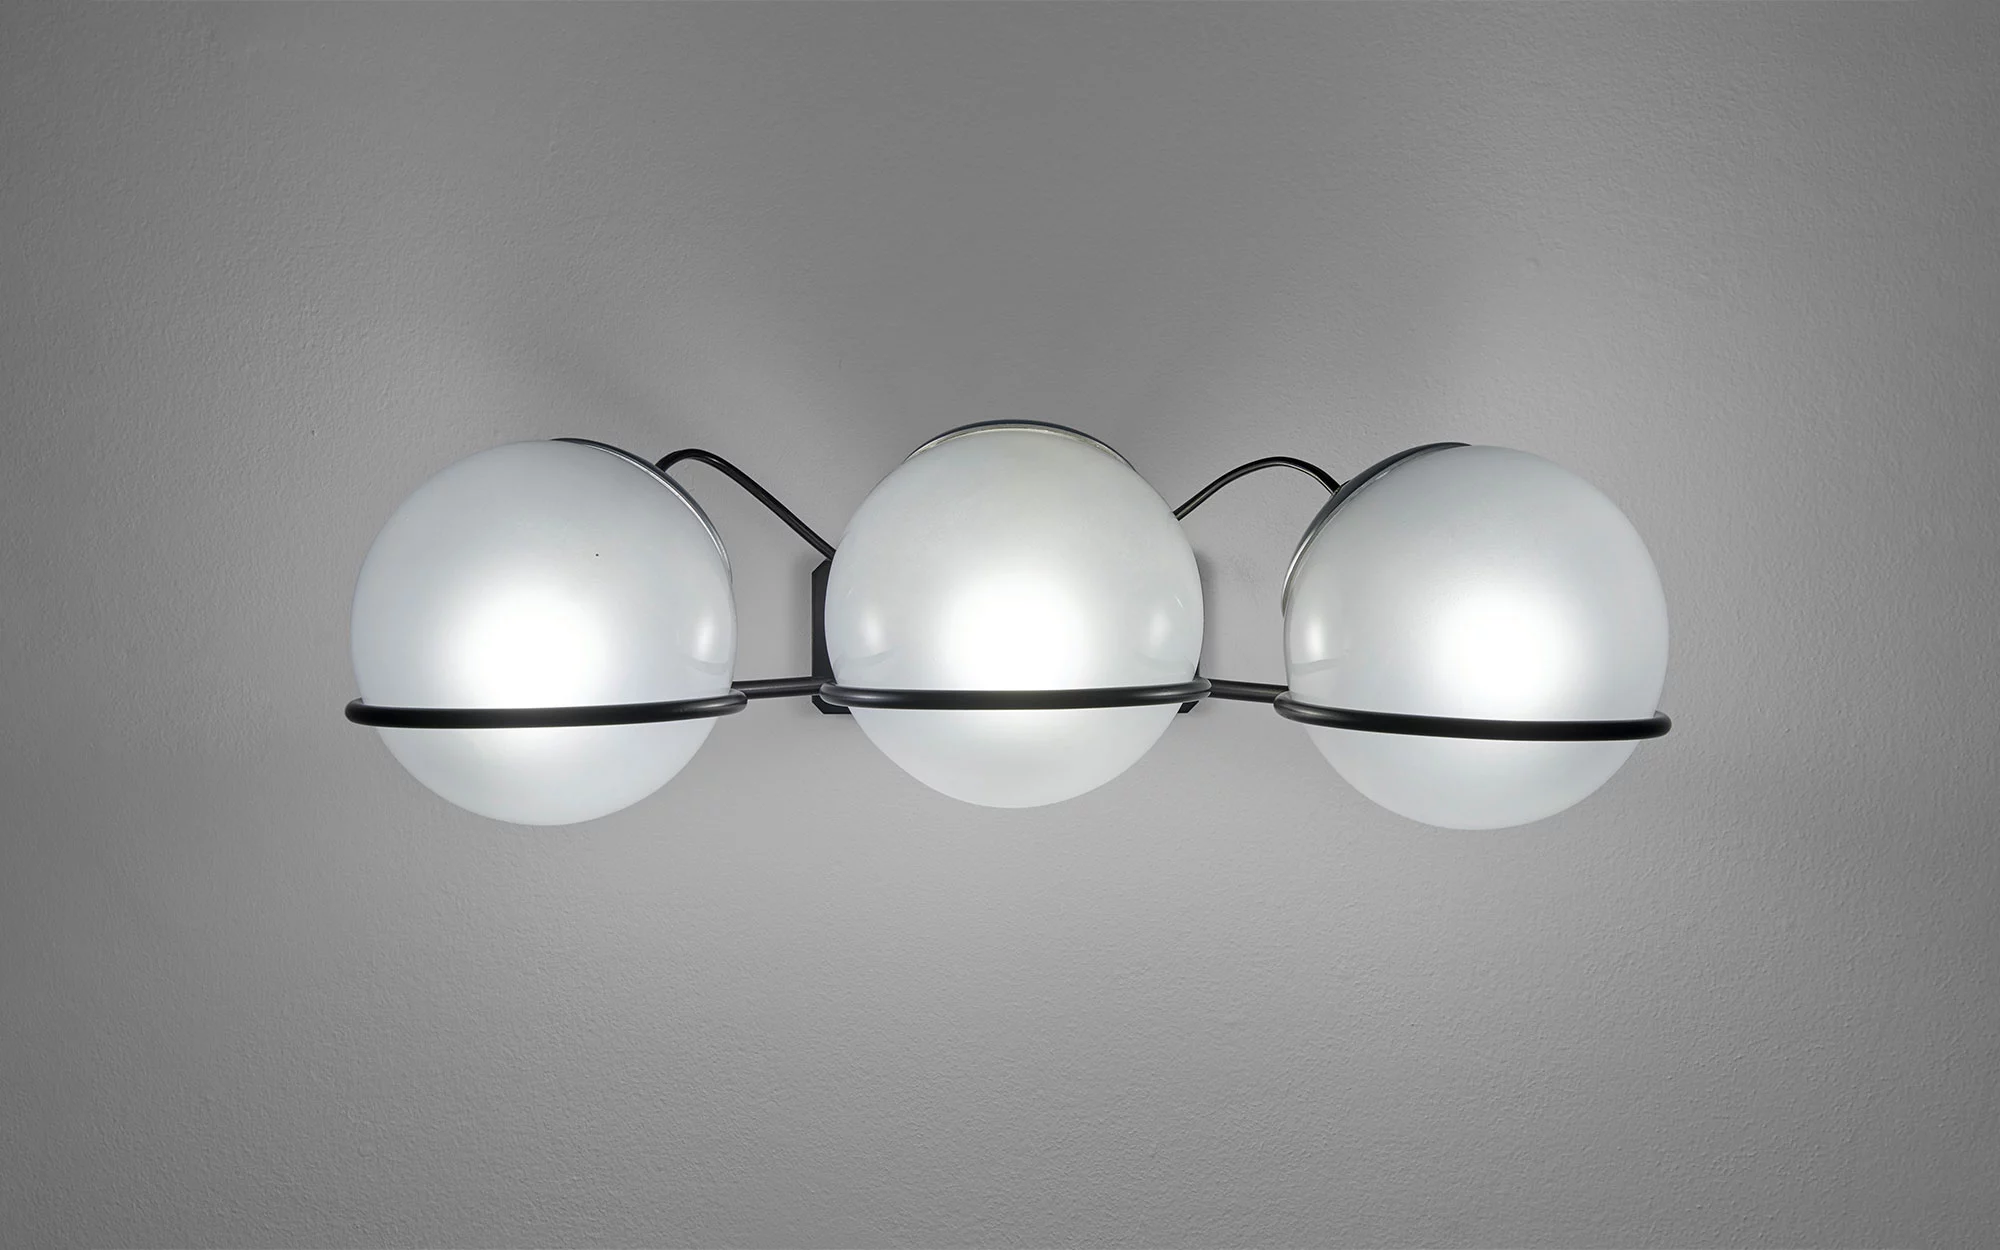 237/3 - Gino Sarfatti - Pendant light - Galerie kreo